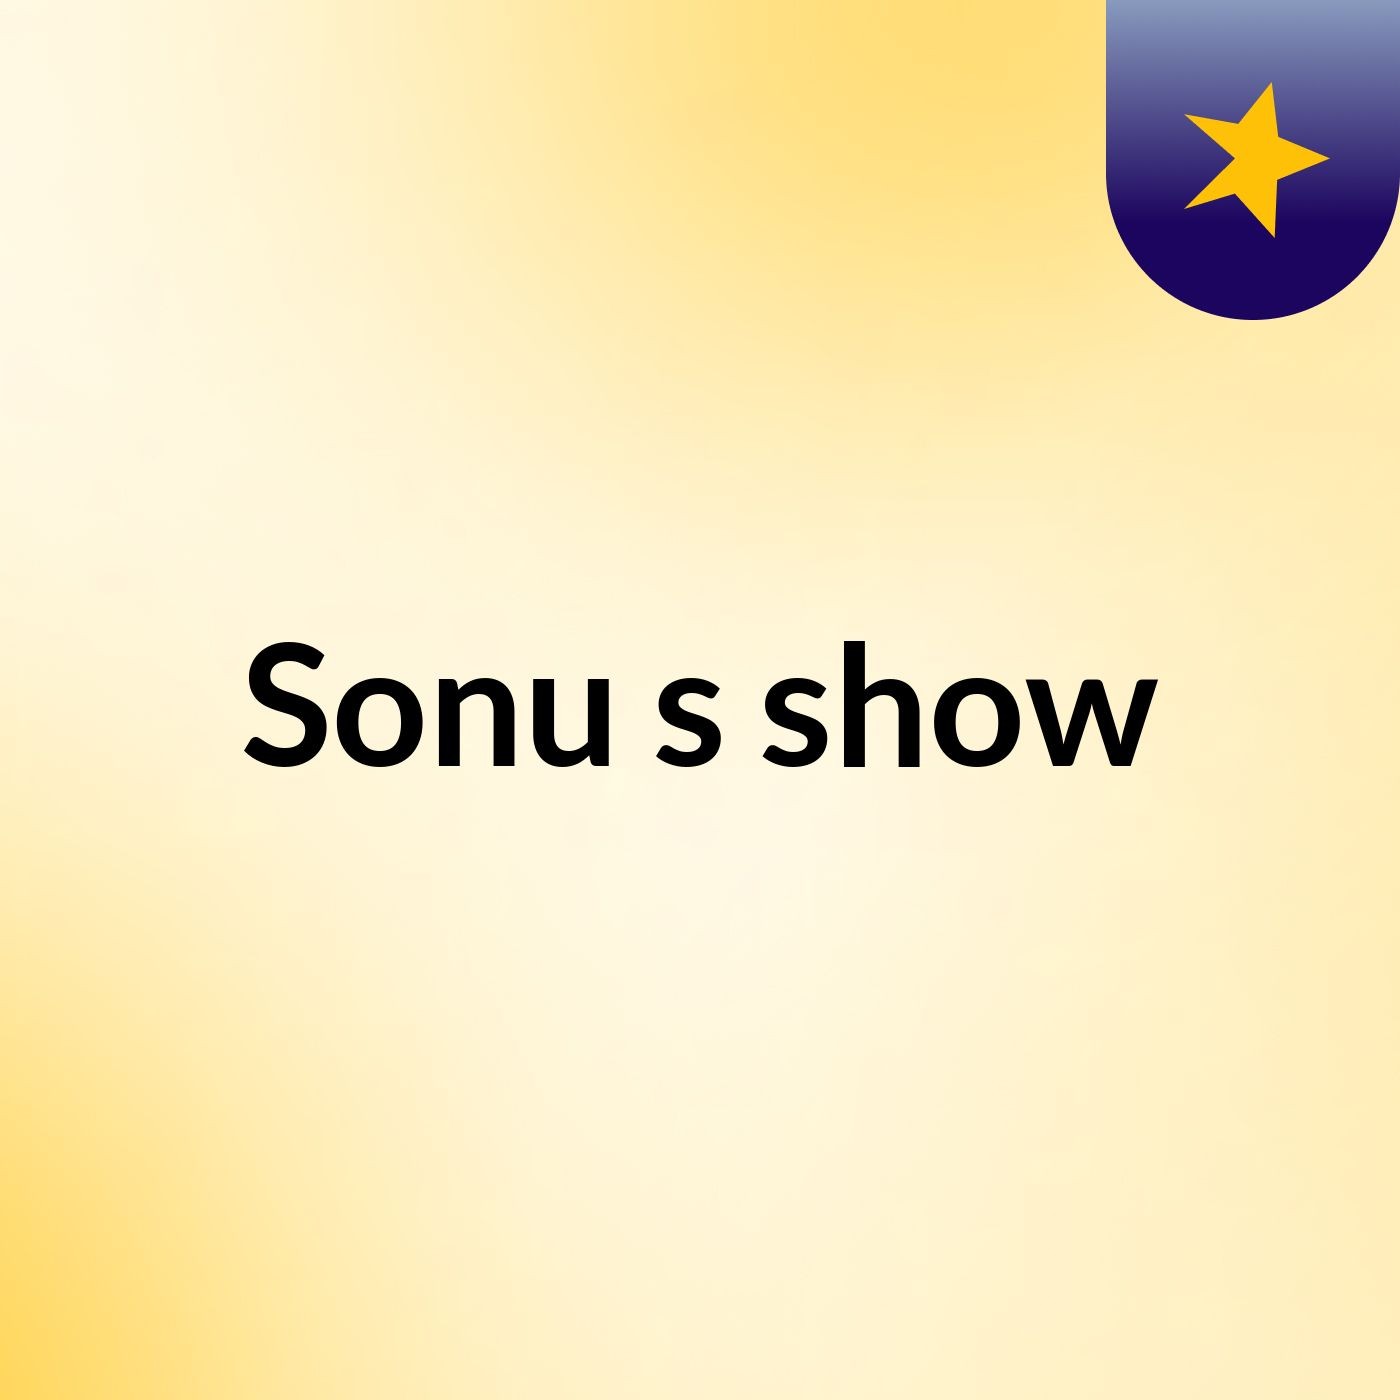 Sonu's show